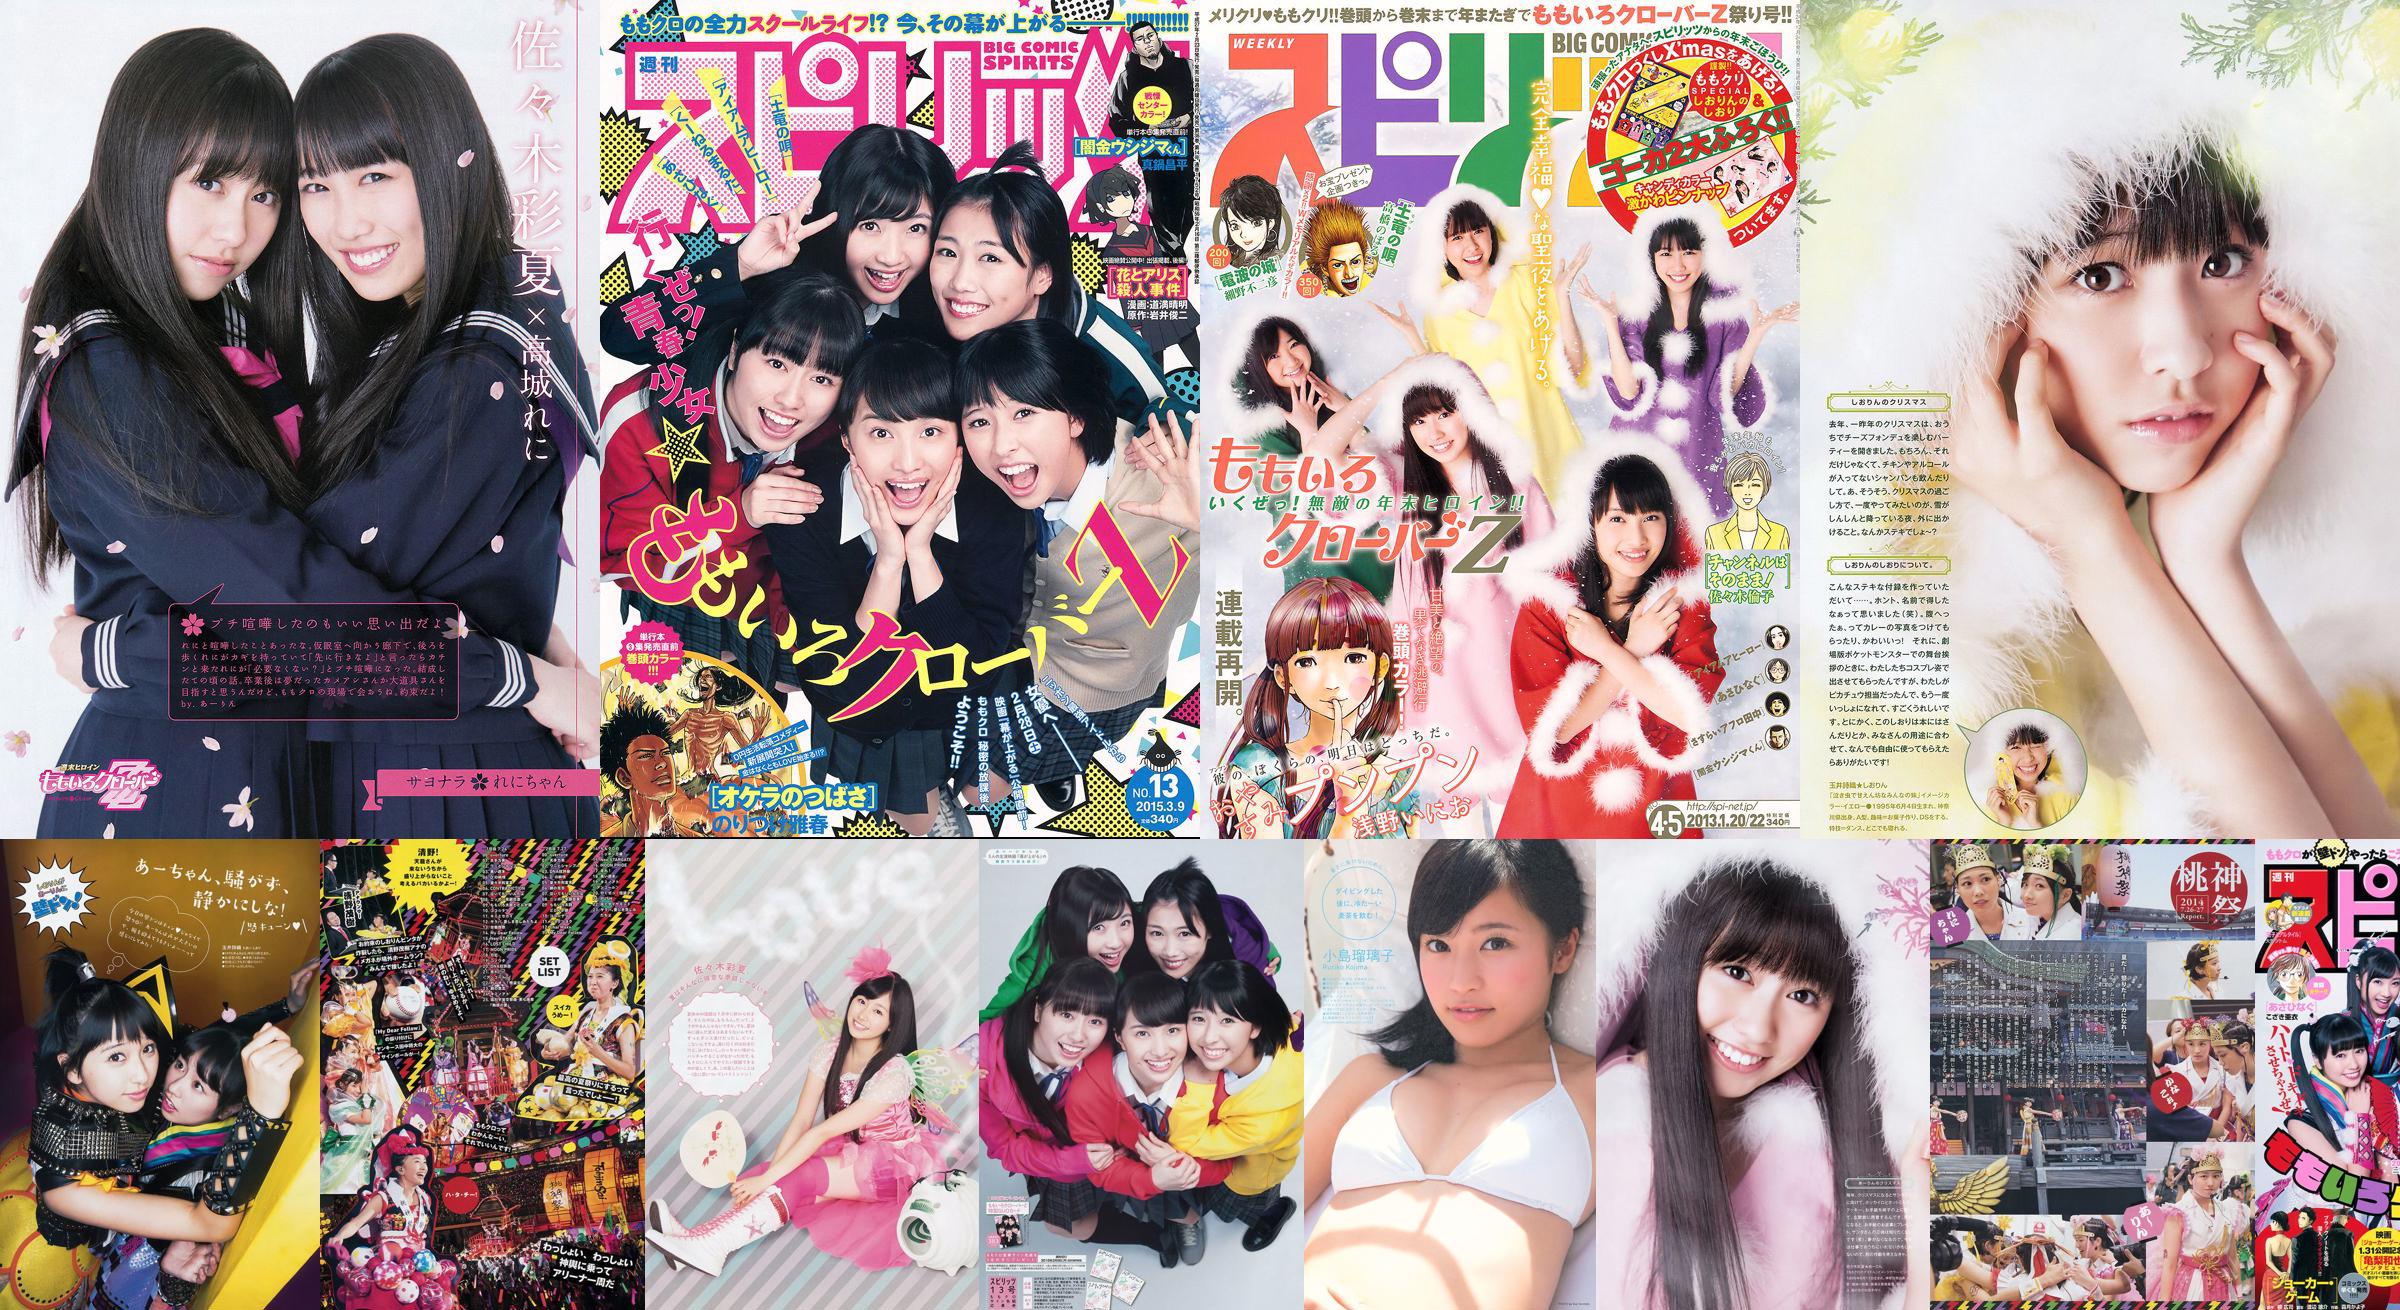 [Weekly Big Comic Spirits] も も い ろ ク ロ ー バ ー Z 2013 No.04-05 Photo Magazine No.6b1a25 Trang 1